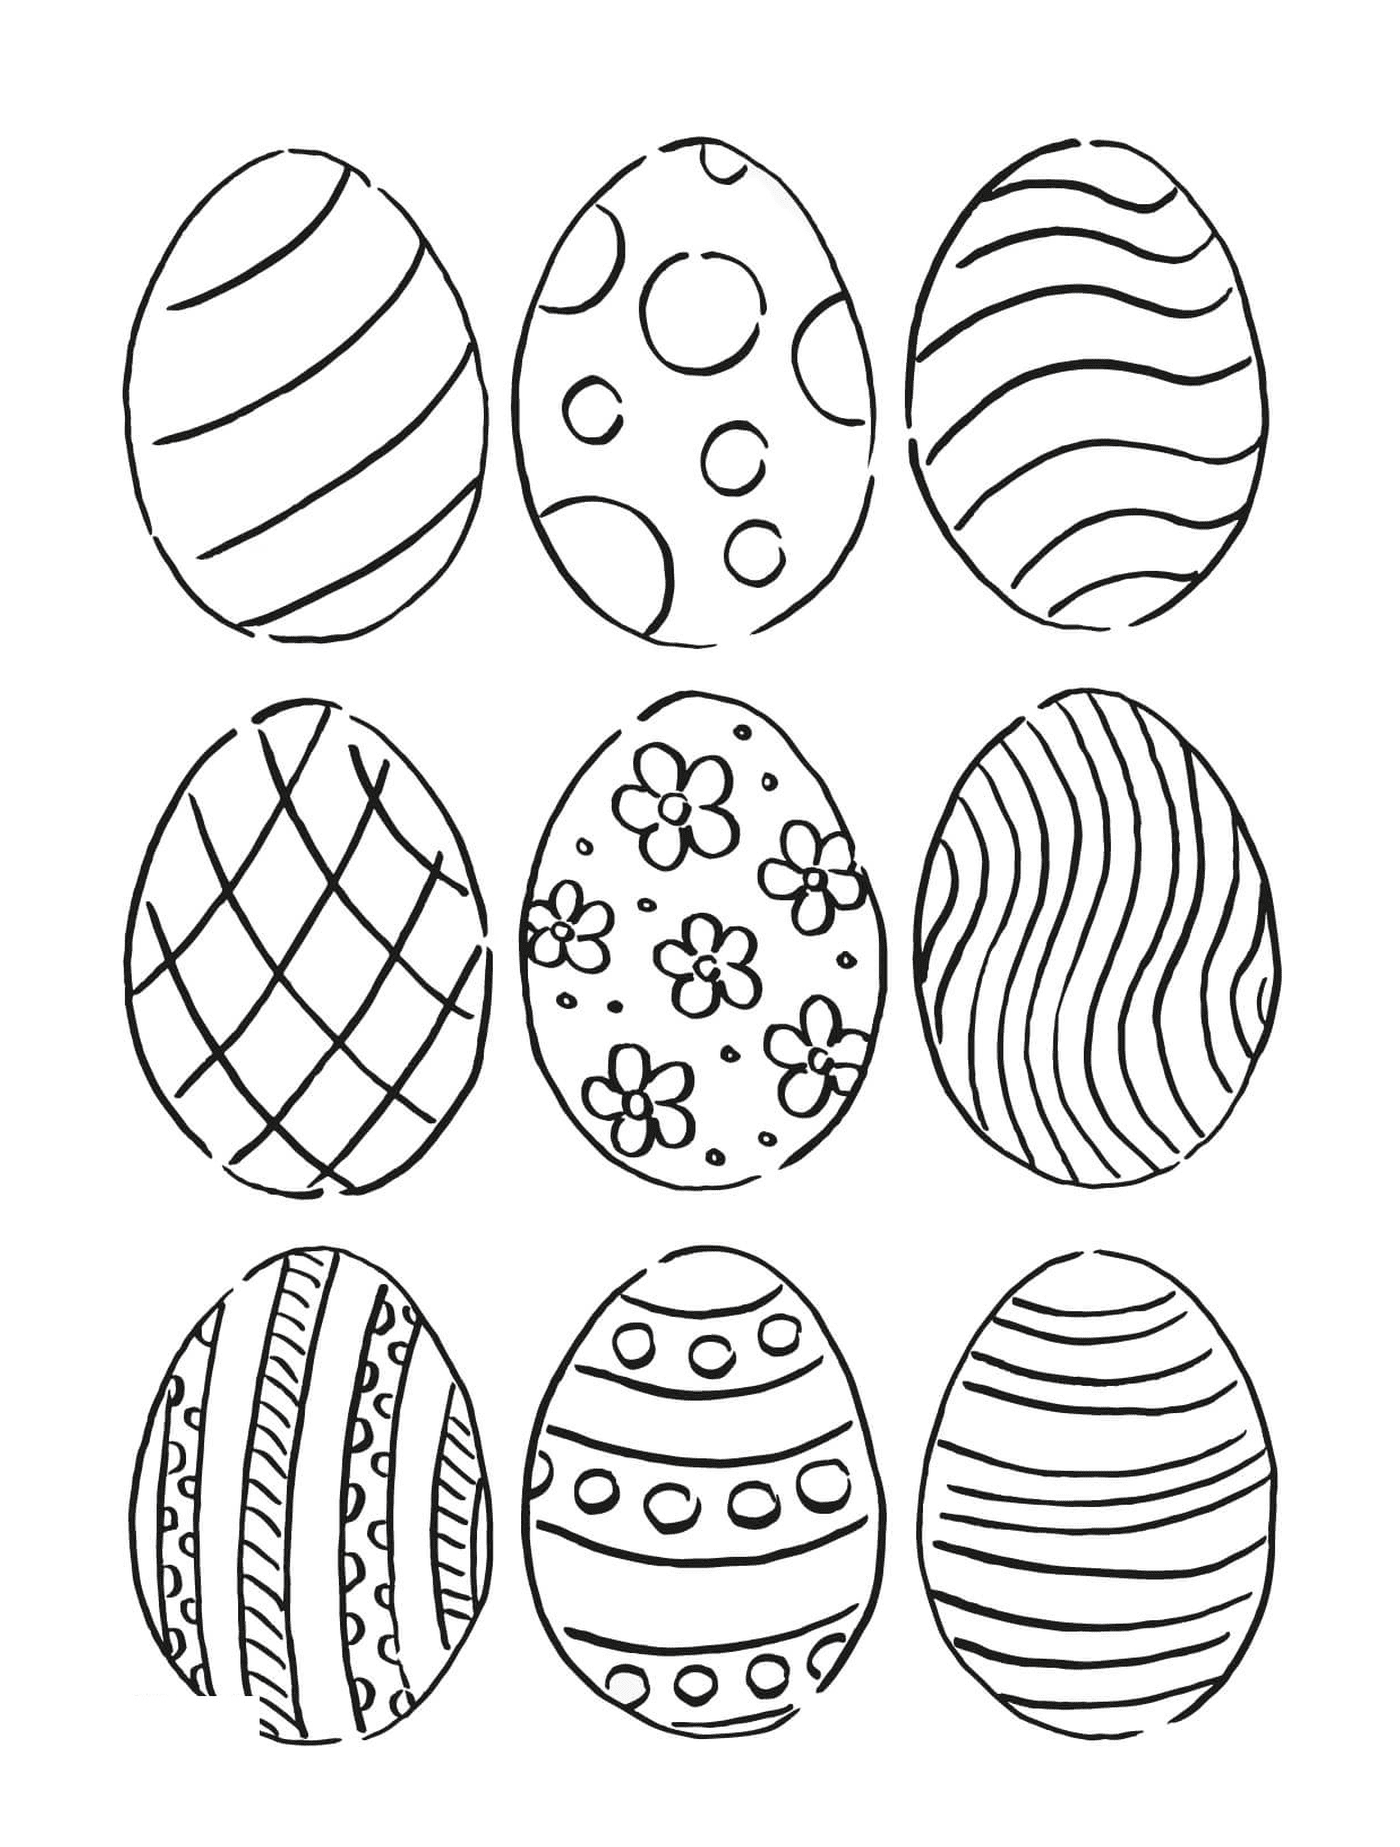  Комплект из девяти яиц с различными образцами 